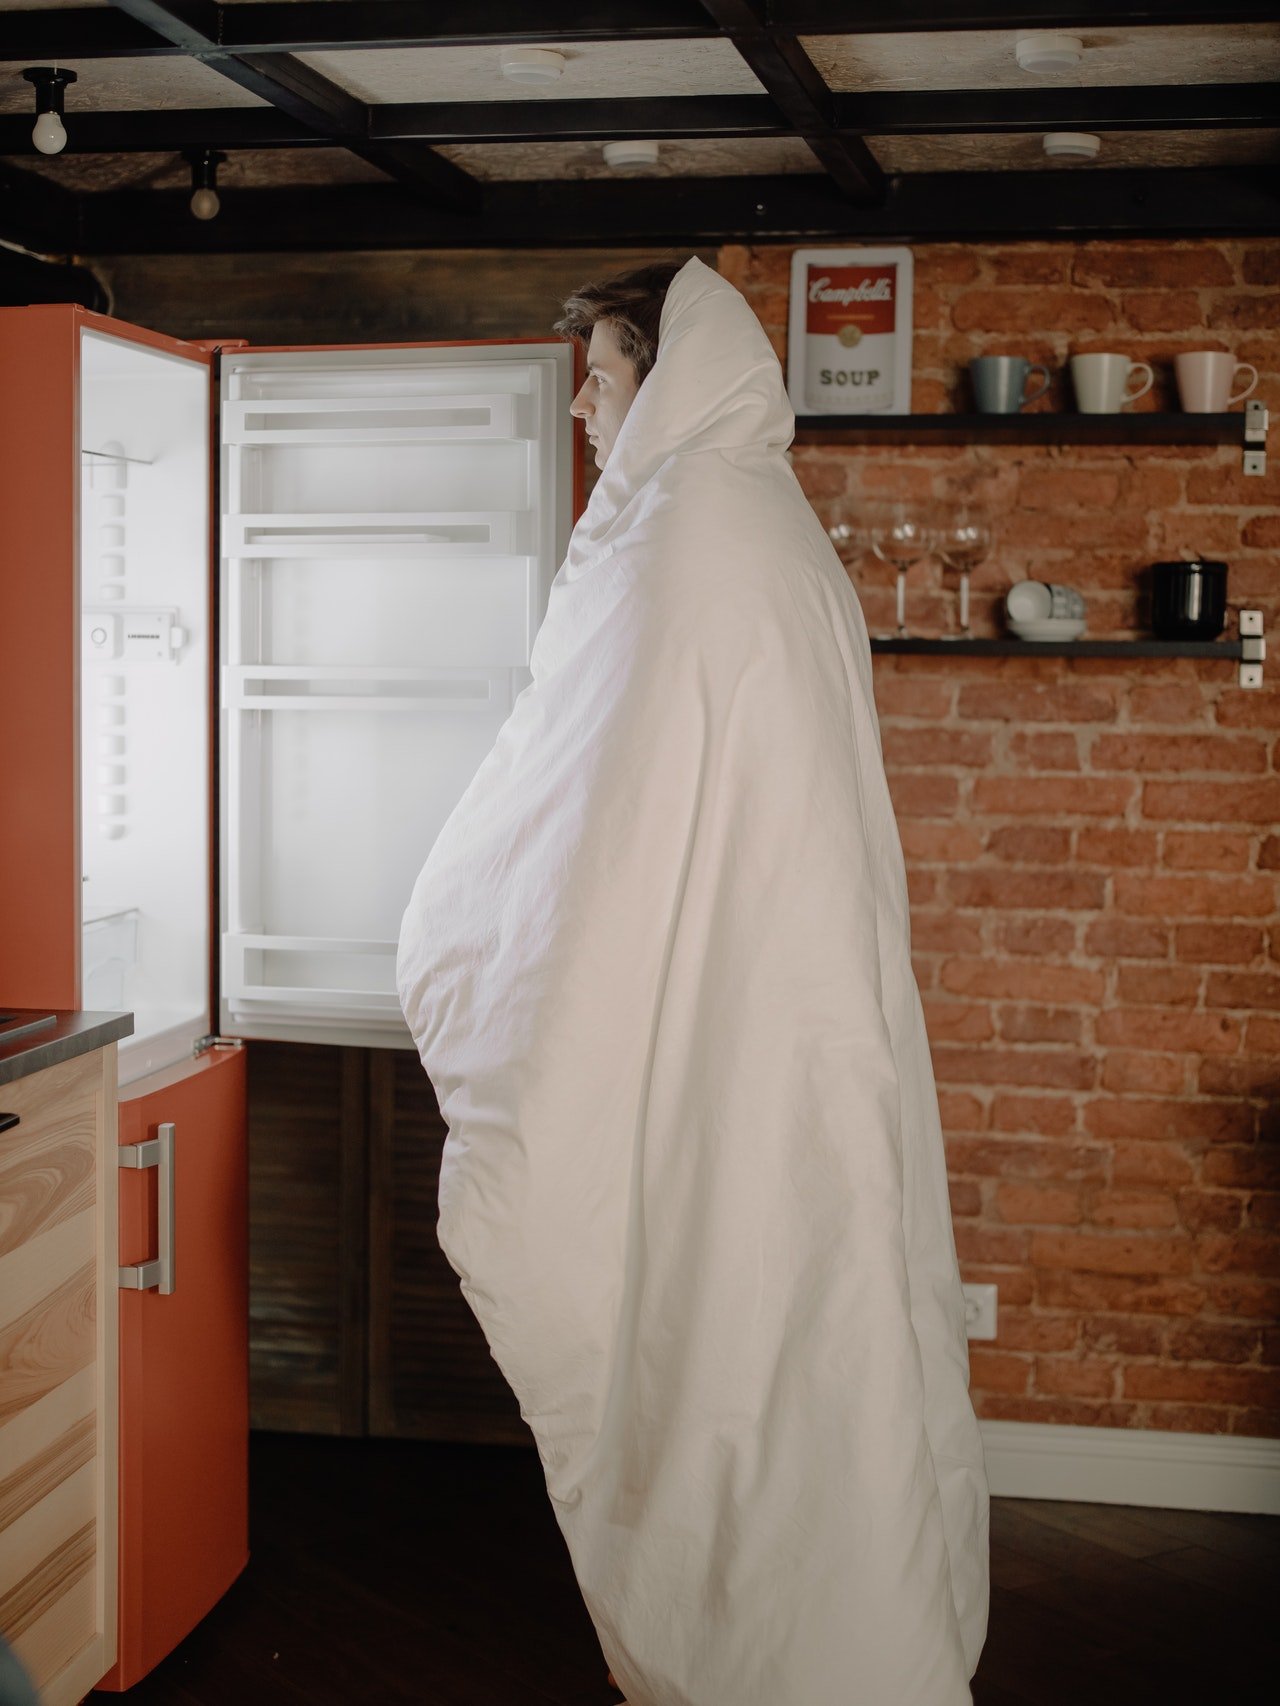 Foto eines Mannes, der vor einem offenen Kühlschrank steht | Quelle: Pexels